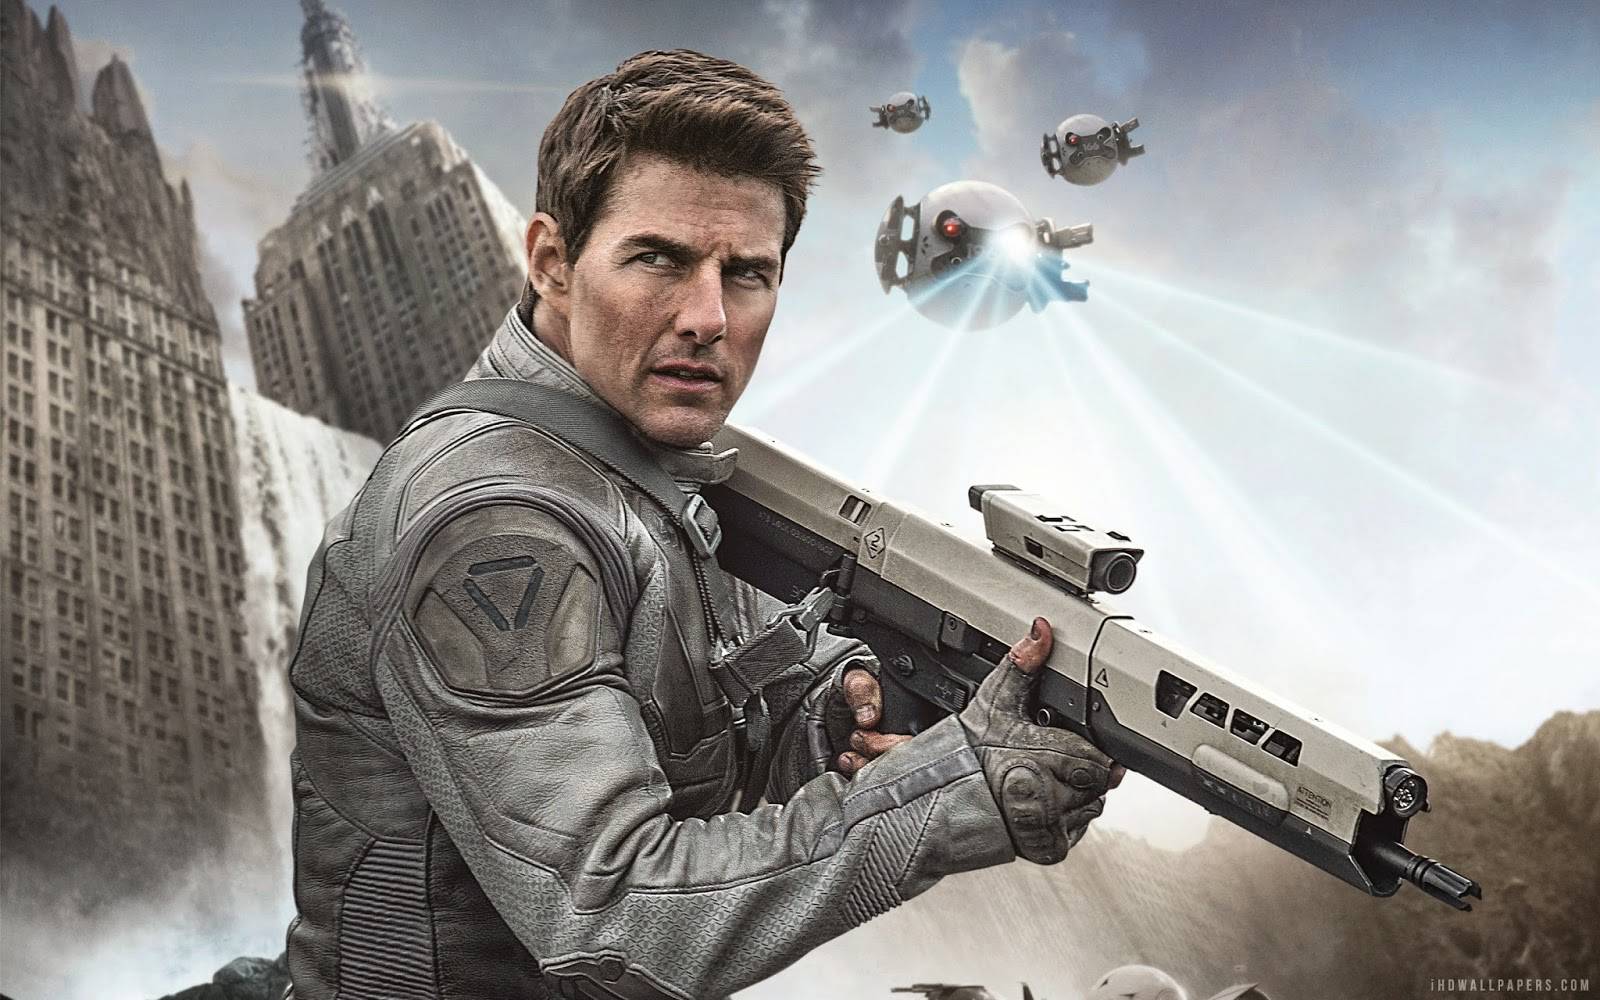 'Scijentolozi misle da će Tom Cruise spasiti čovječanstvo...'